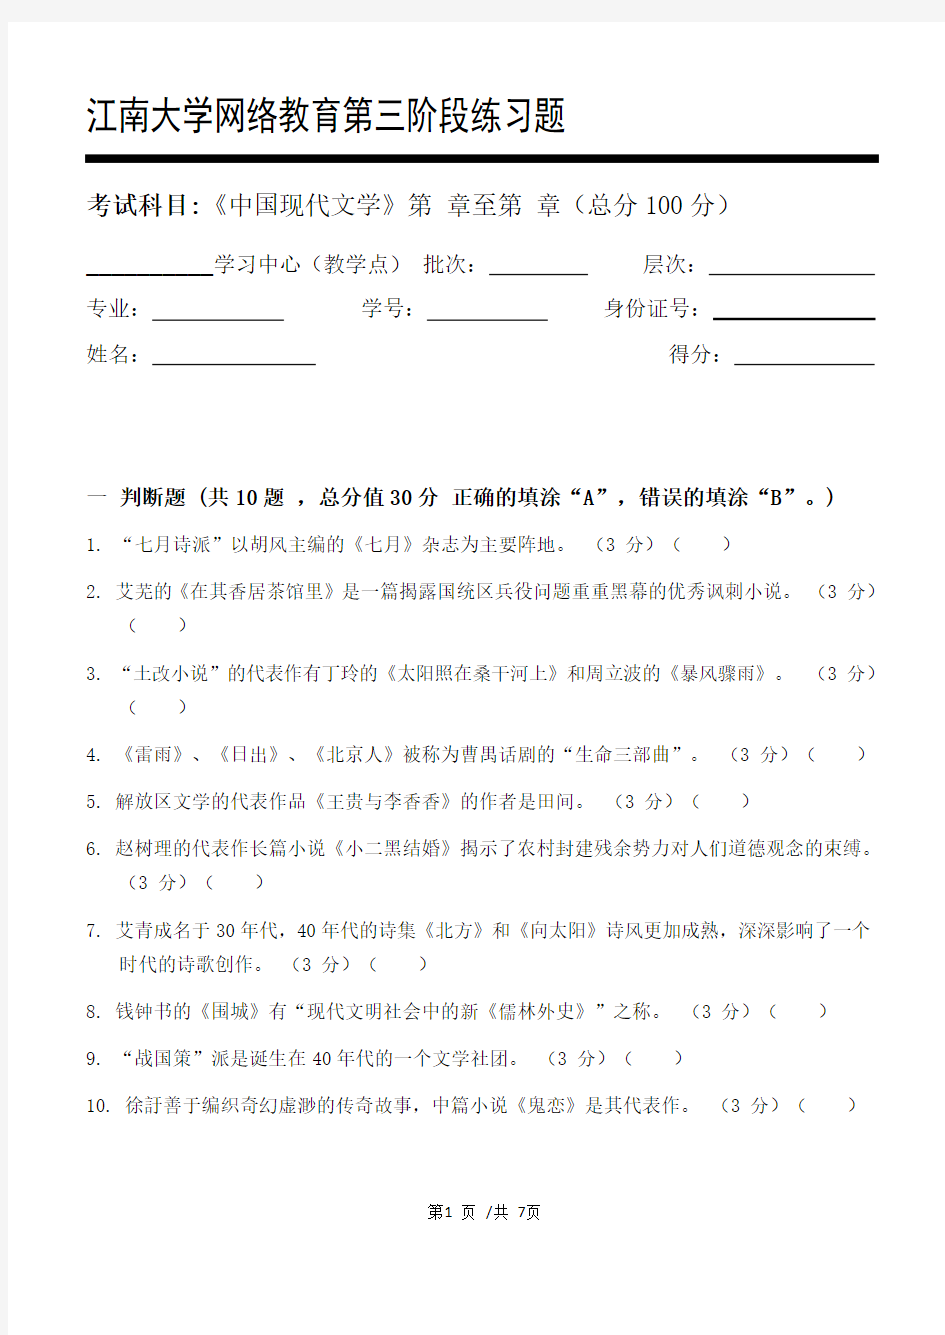 中国现代文学第3阶段练习题江大考试题库及答案一科共有三个阶段,这是其中一个阶段。答案在最